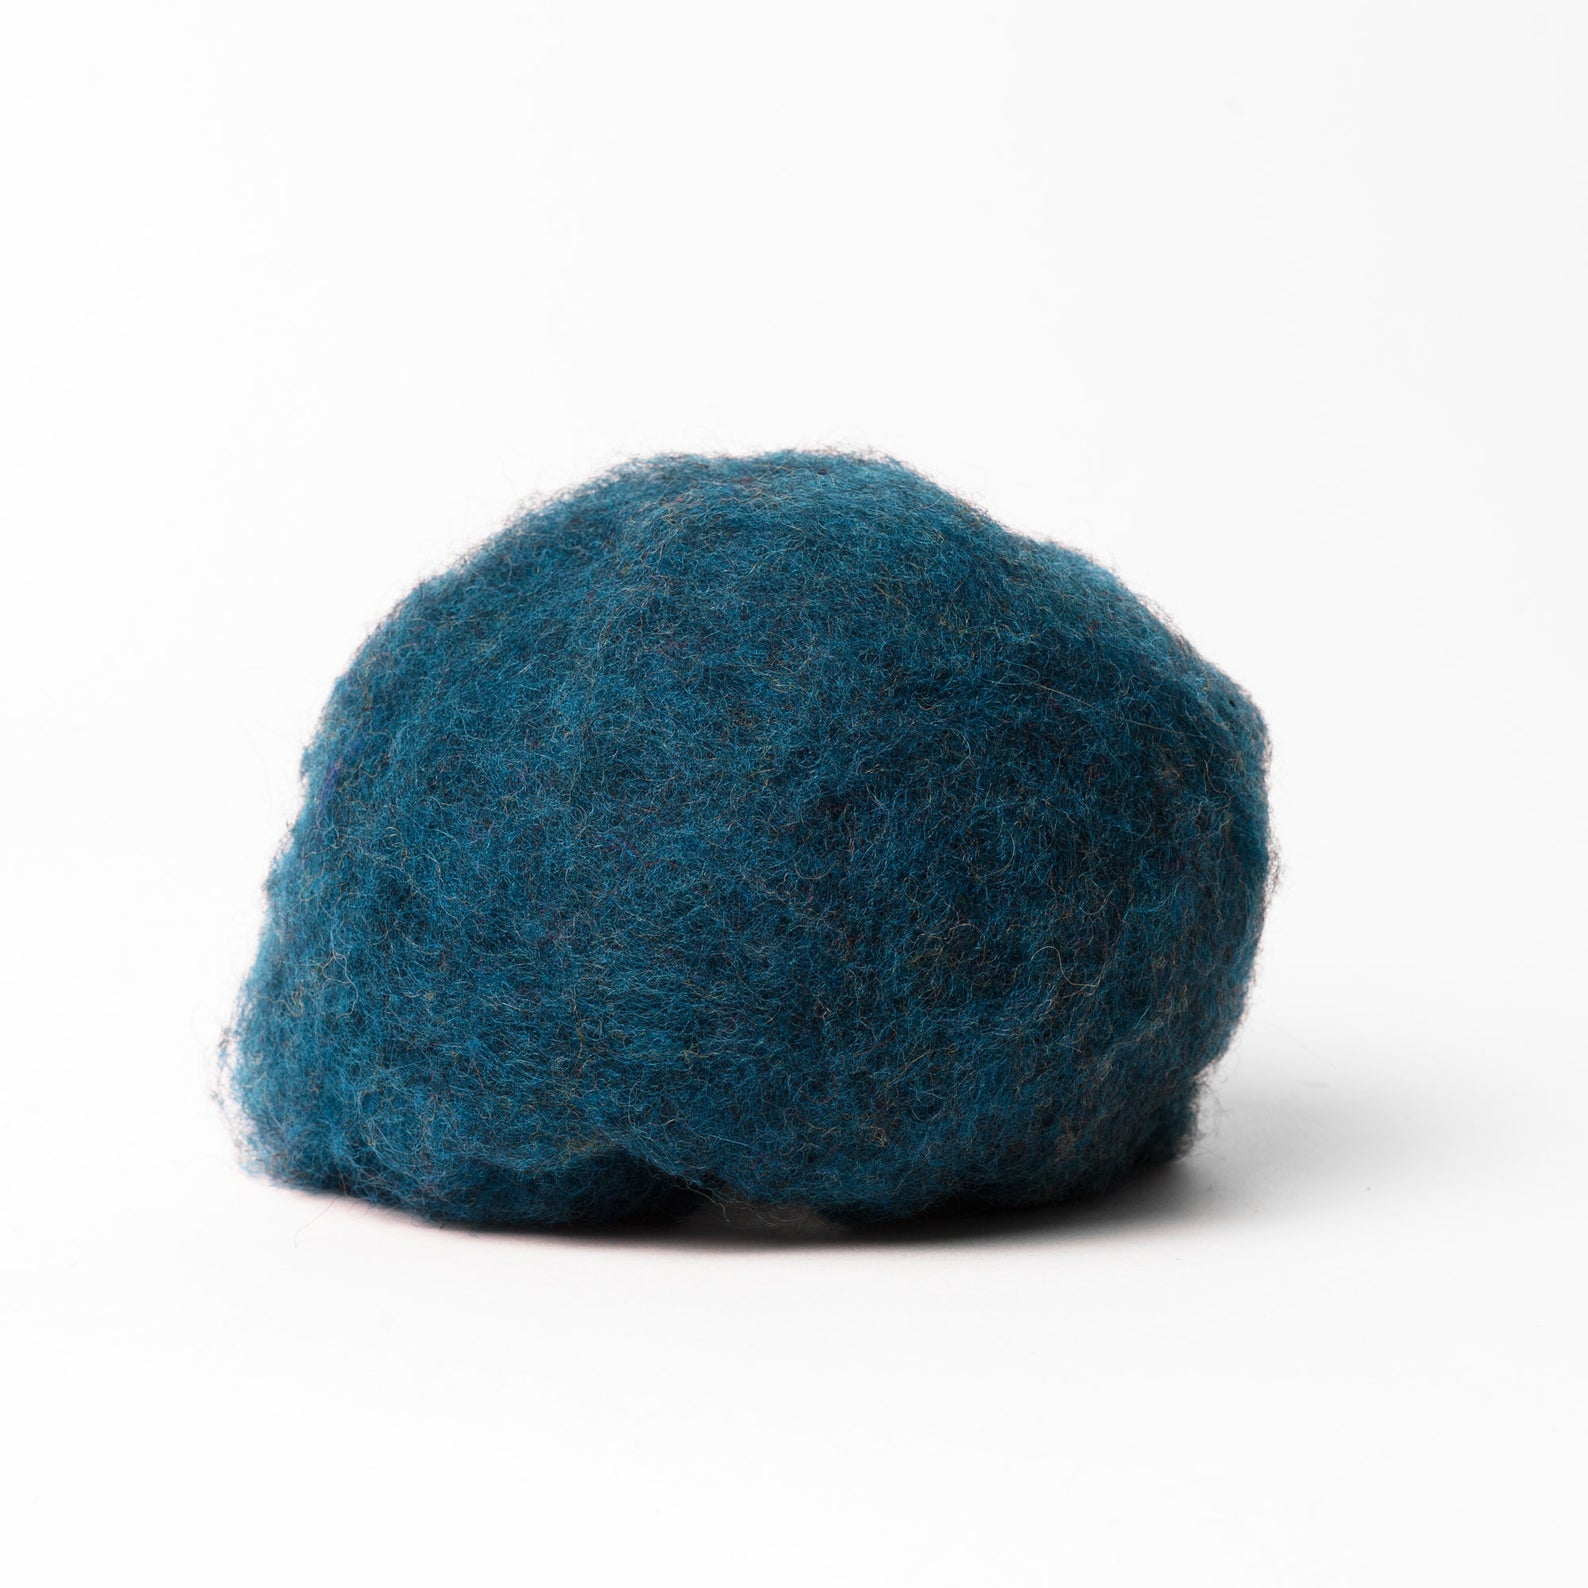 Blue Wool for Wet Felting, Tyrolean Bergschaf